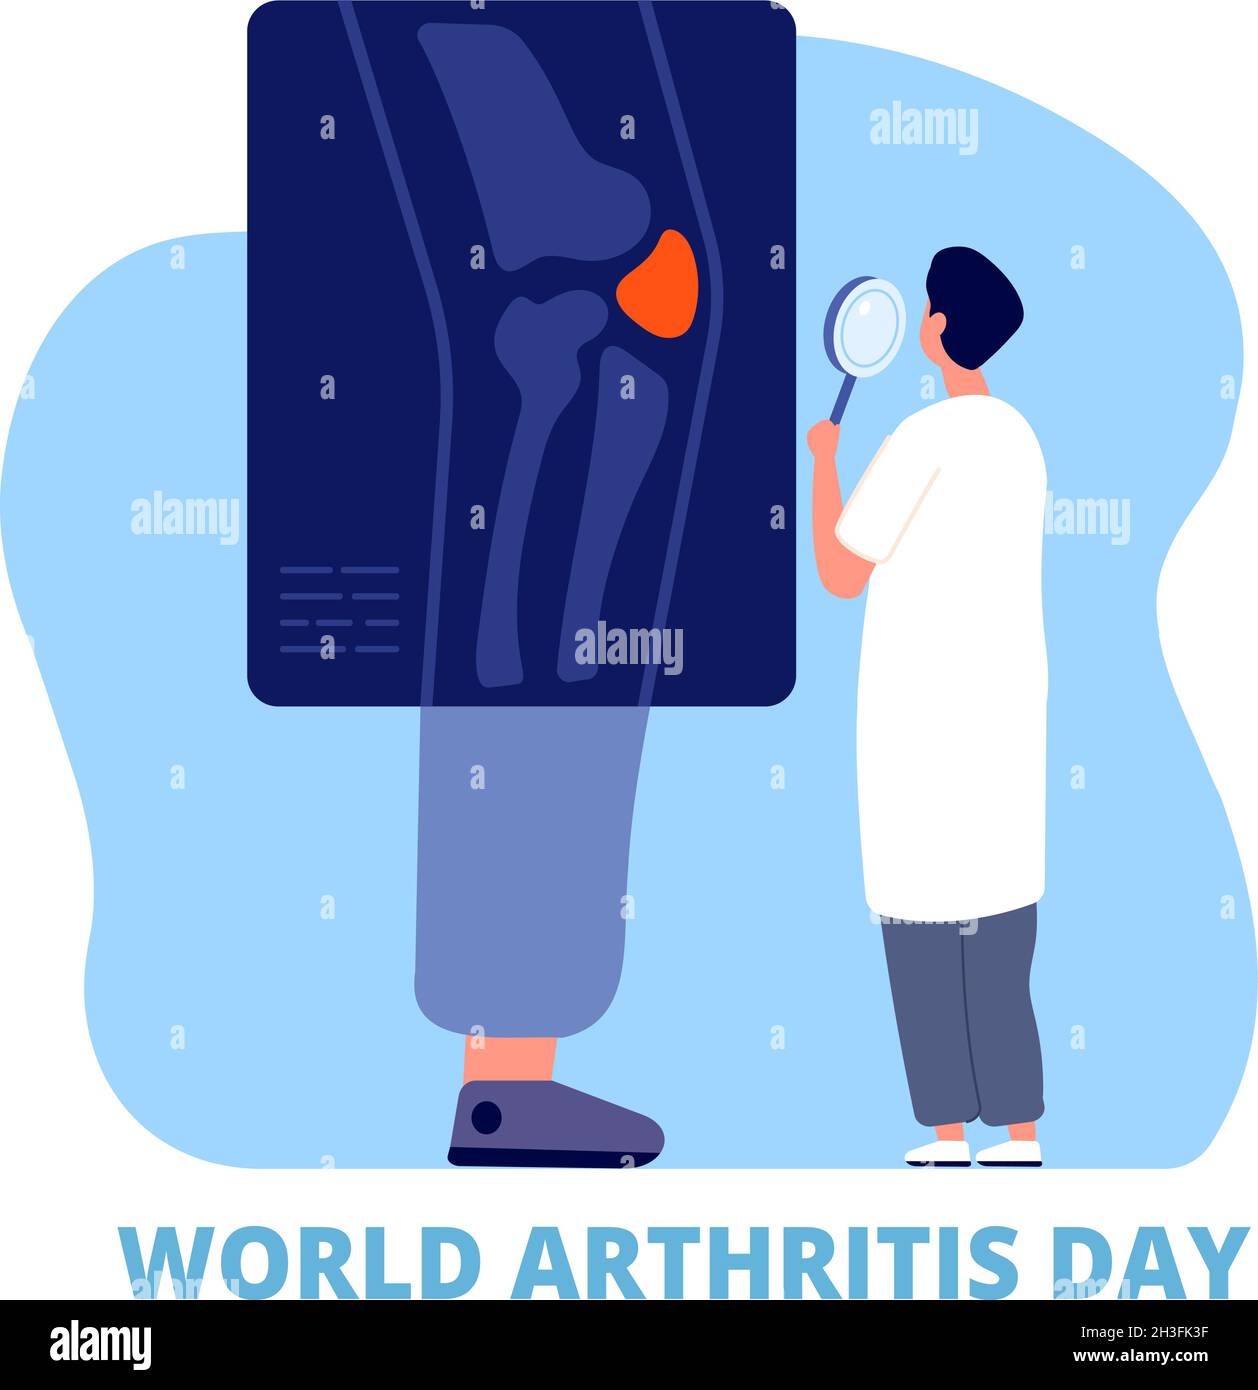 Welt Arthritis Tag. Medizinkonzept, Verteidigungsgelenk, Gesundheit und Pflege. Osteoarthritis, Arzt untersuchen Bein Knie Knochen auf Röntgen-Utter-Vektor-Hintergrund Stock Vektor